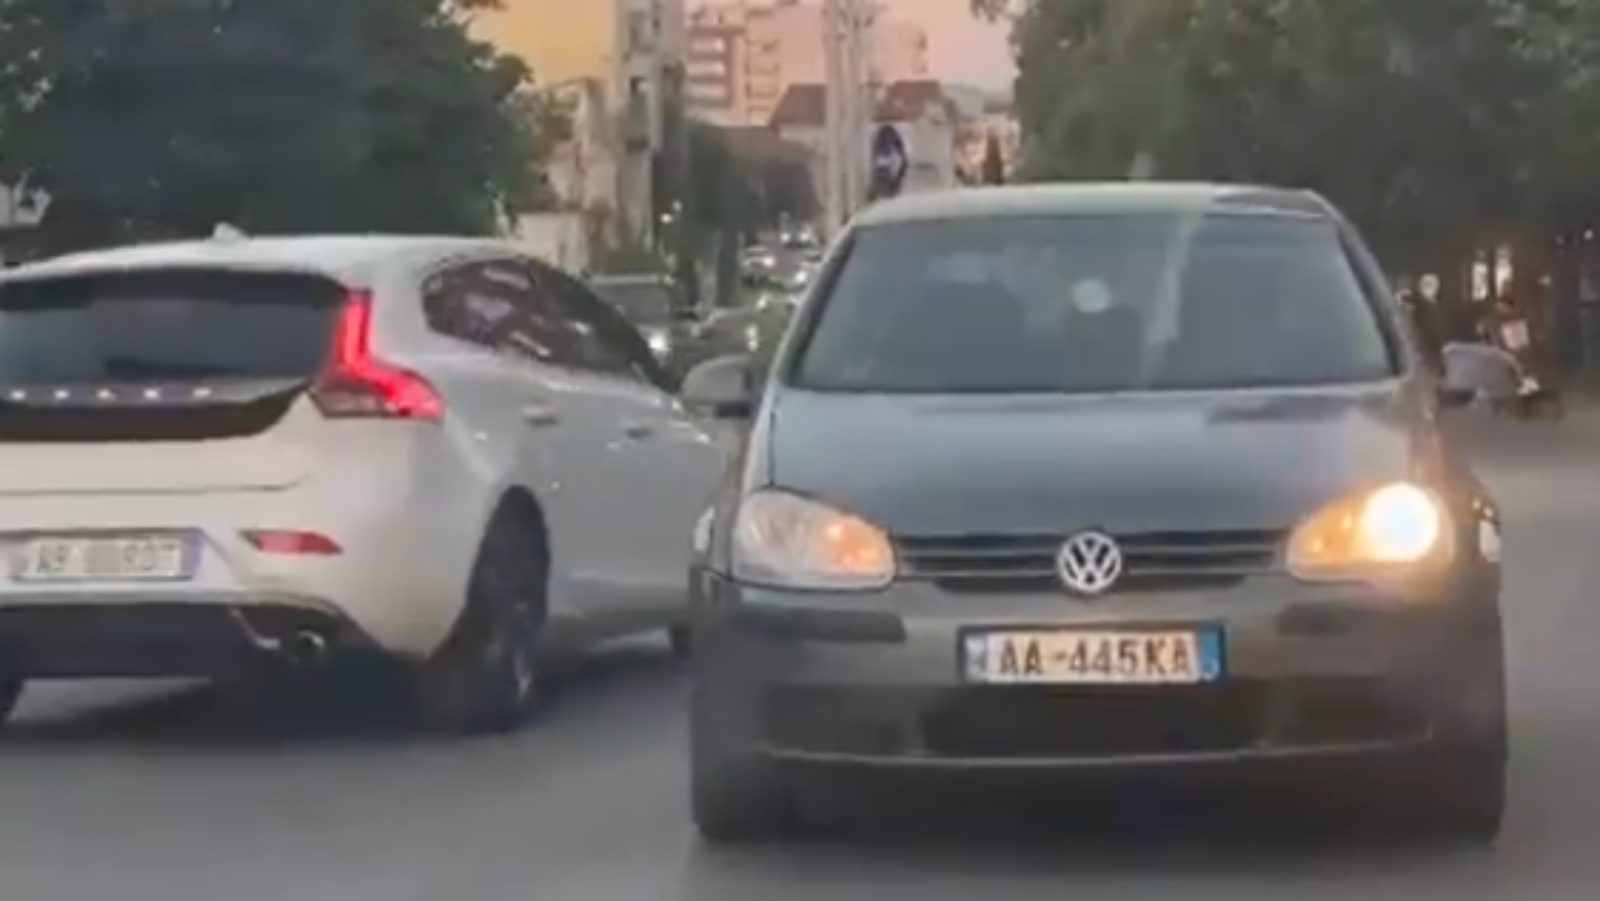 Habit shoferi tek “Rruga e Elbasanit”, futet kundravajtje në rrugën kryesore